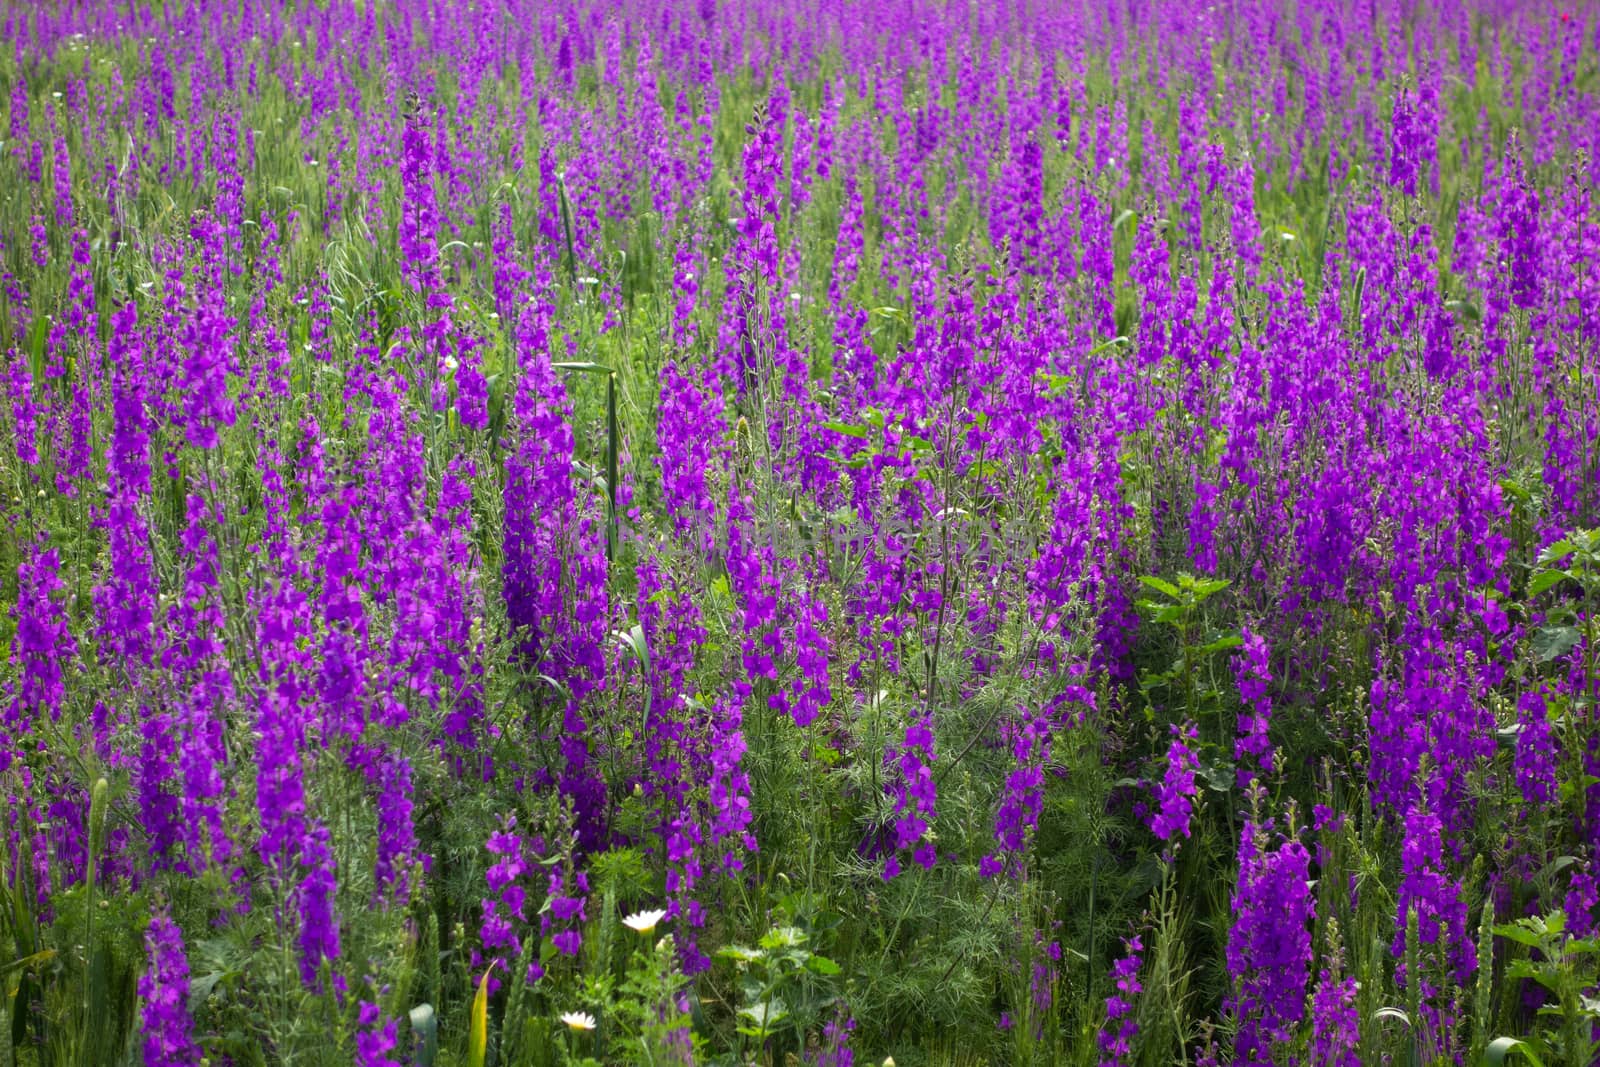 Purple flowers in field by Portokalis